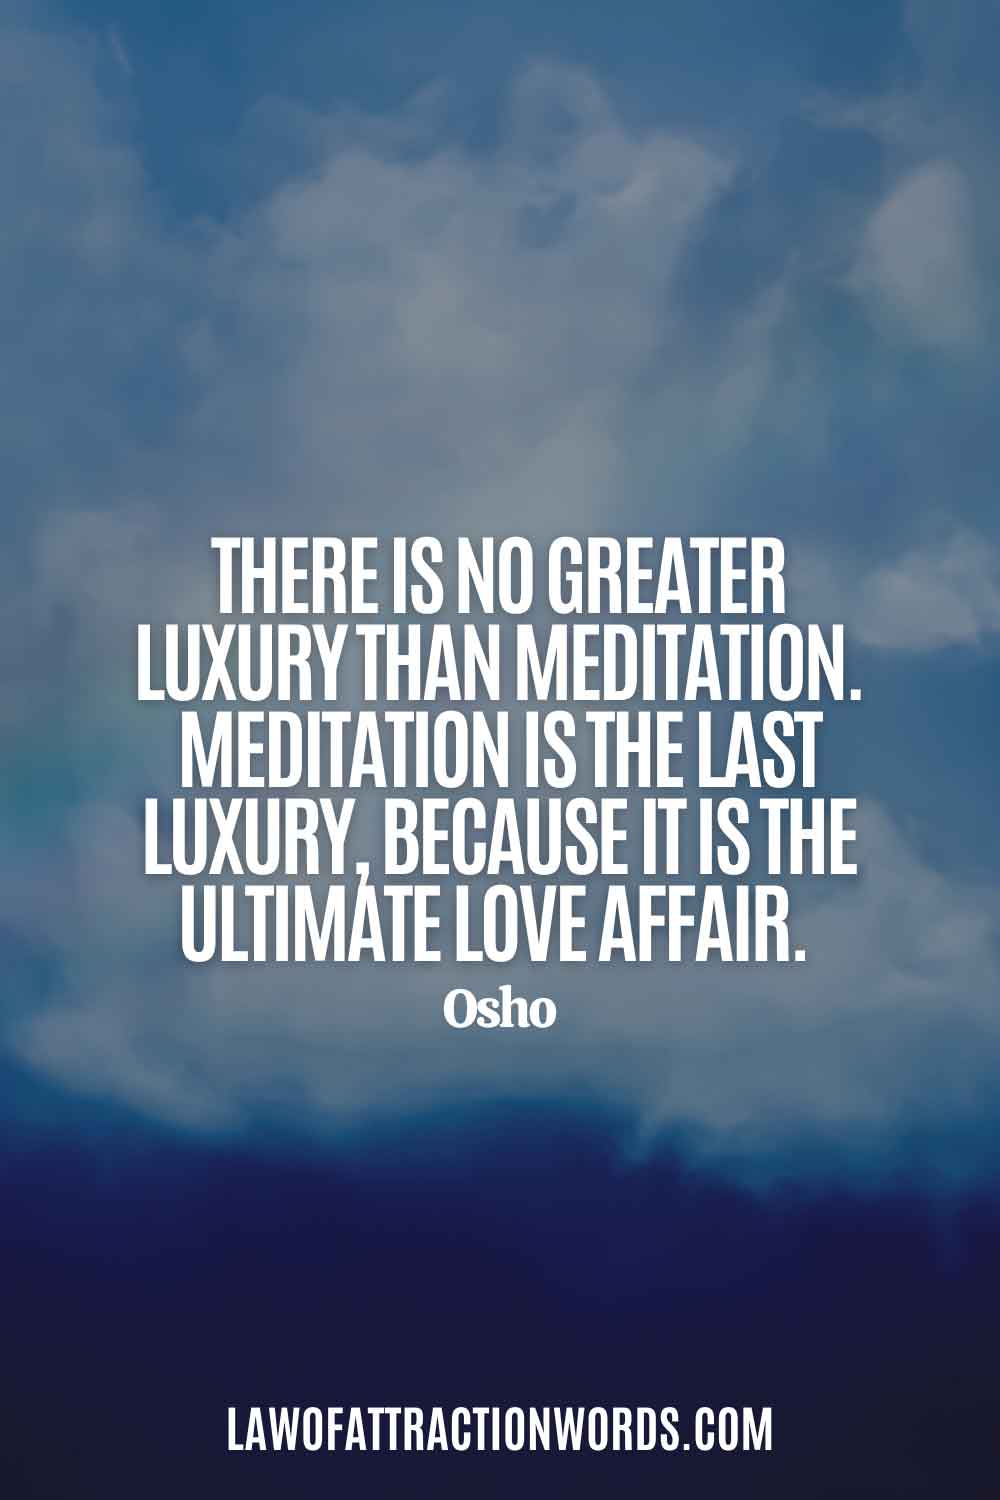 osho meditation quotes